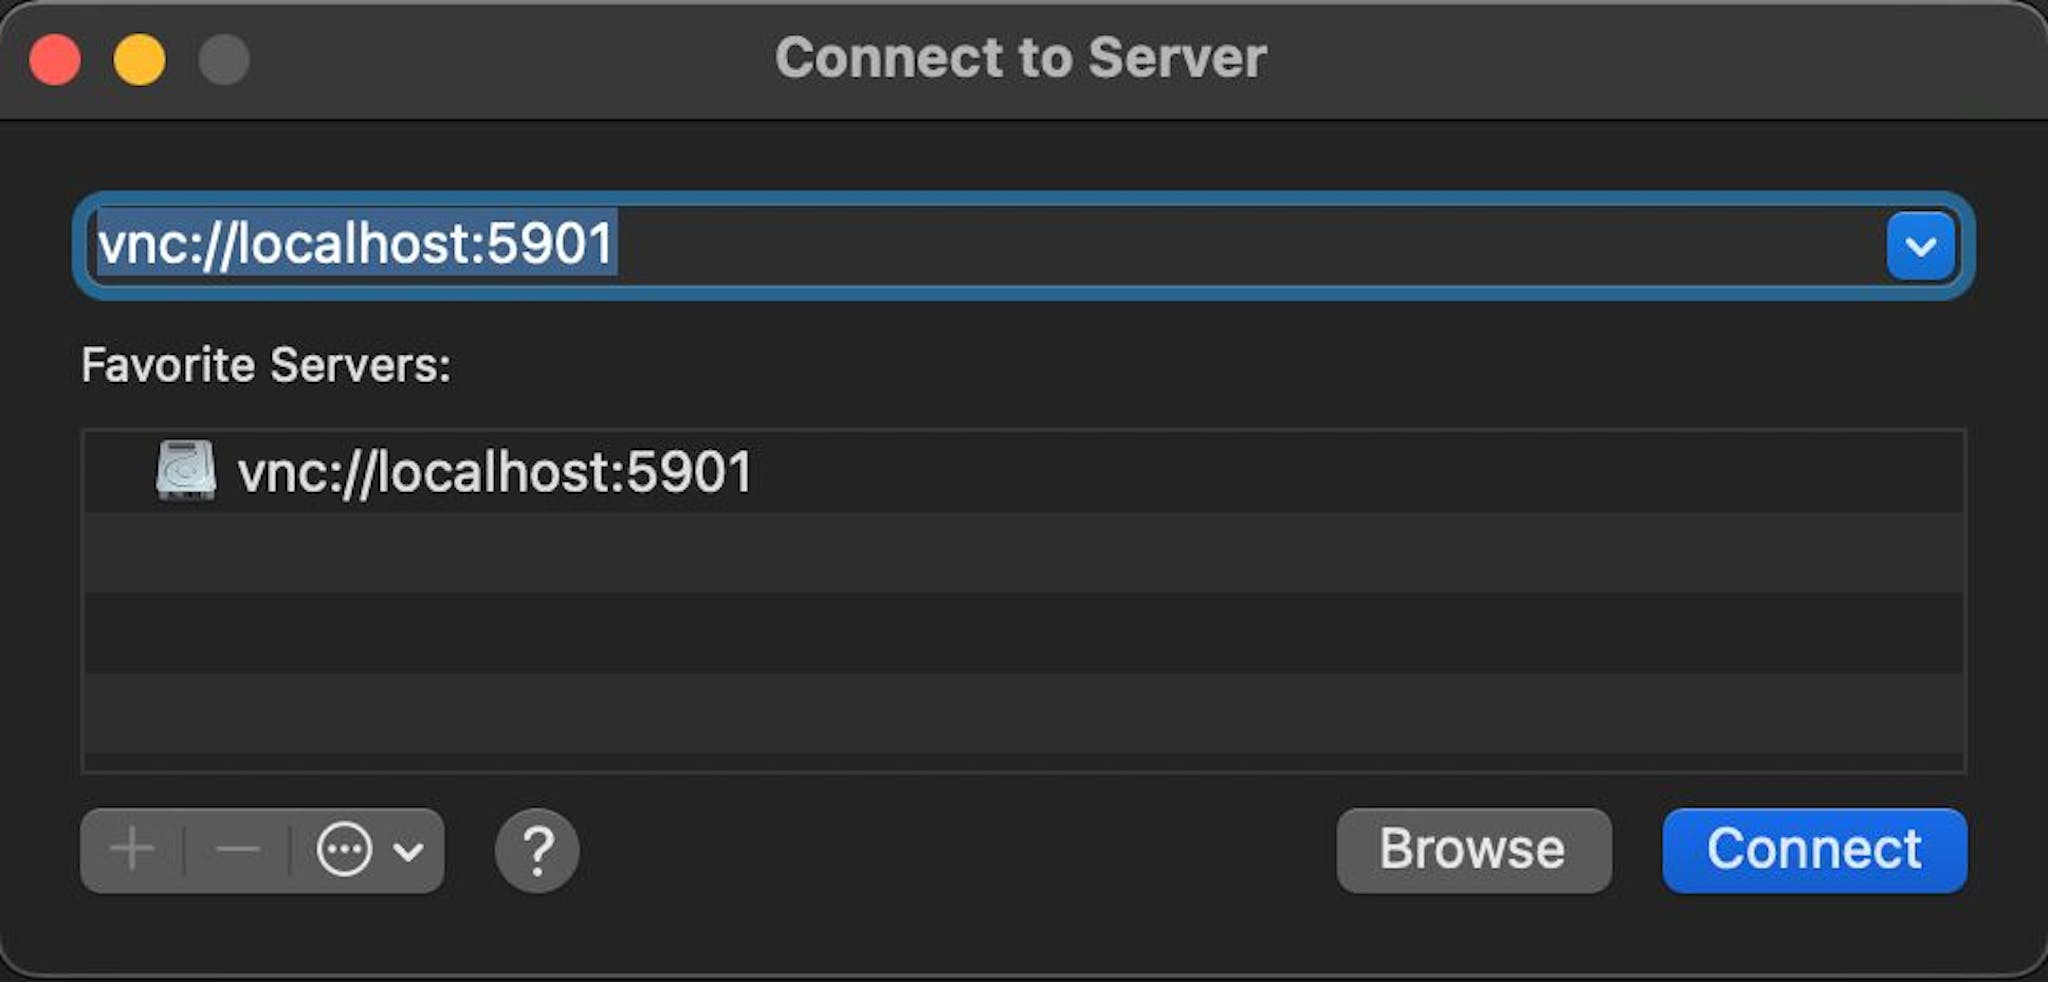 L'exemple de boîte de dialogue macOS 'Connect to Server' pointe vers vnc://localhost:5901